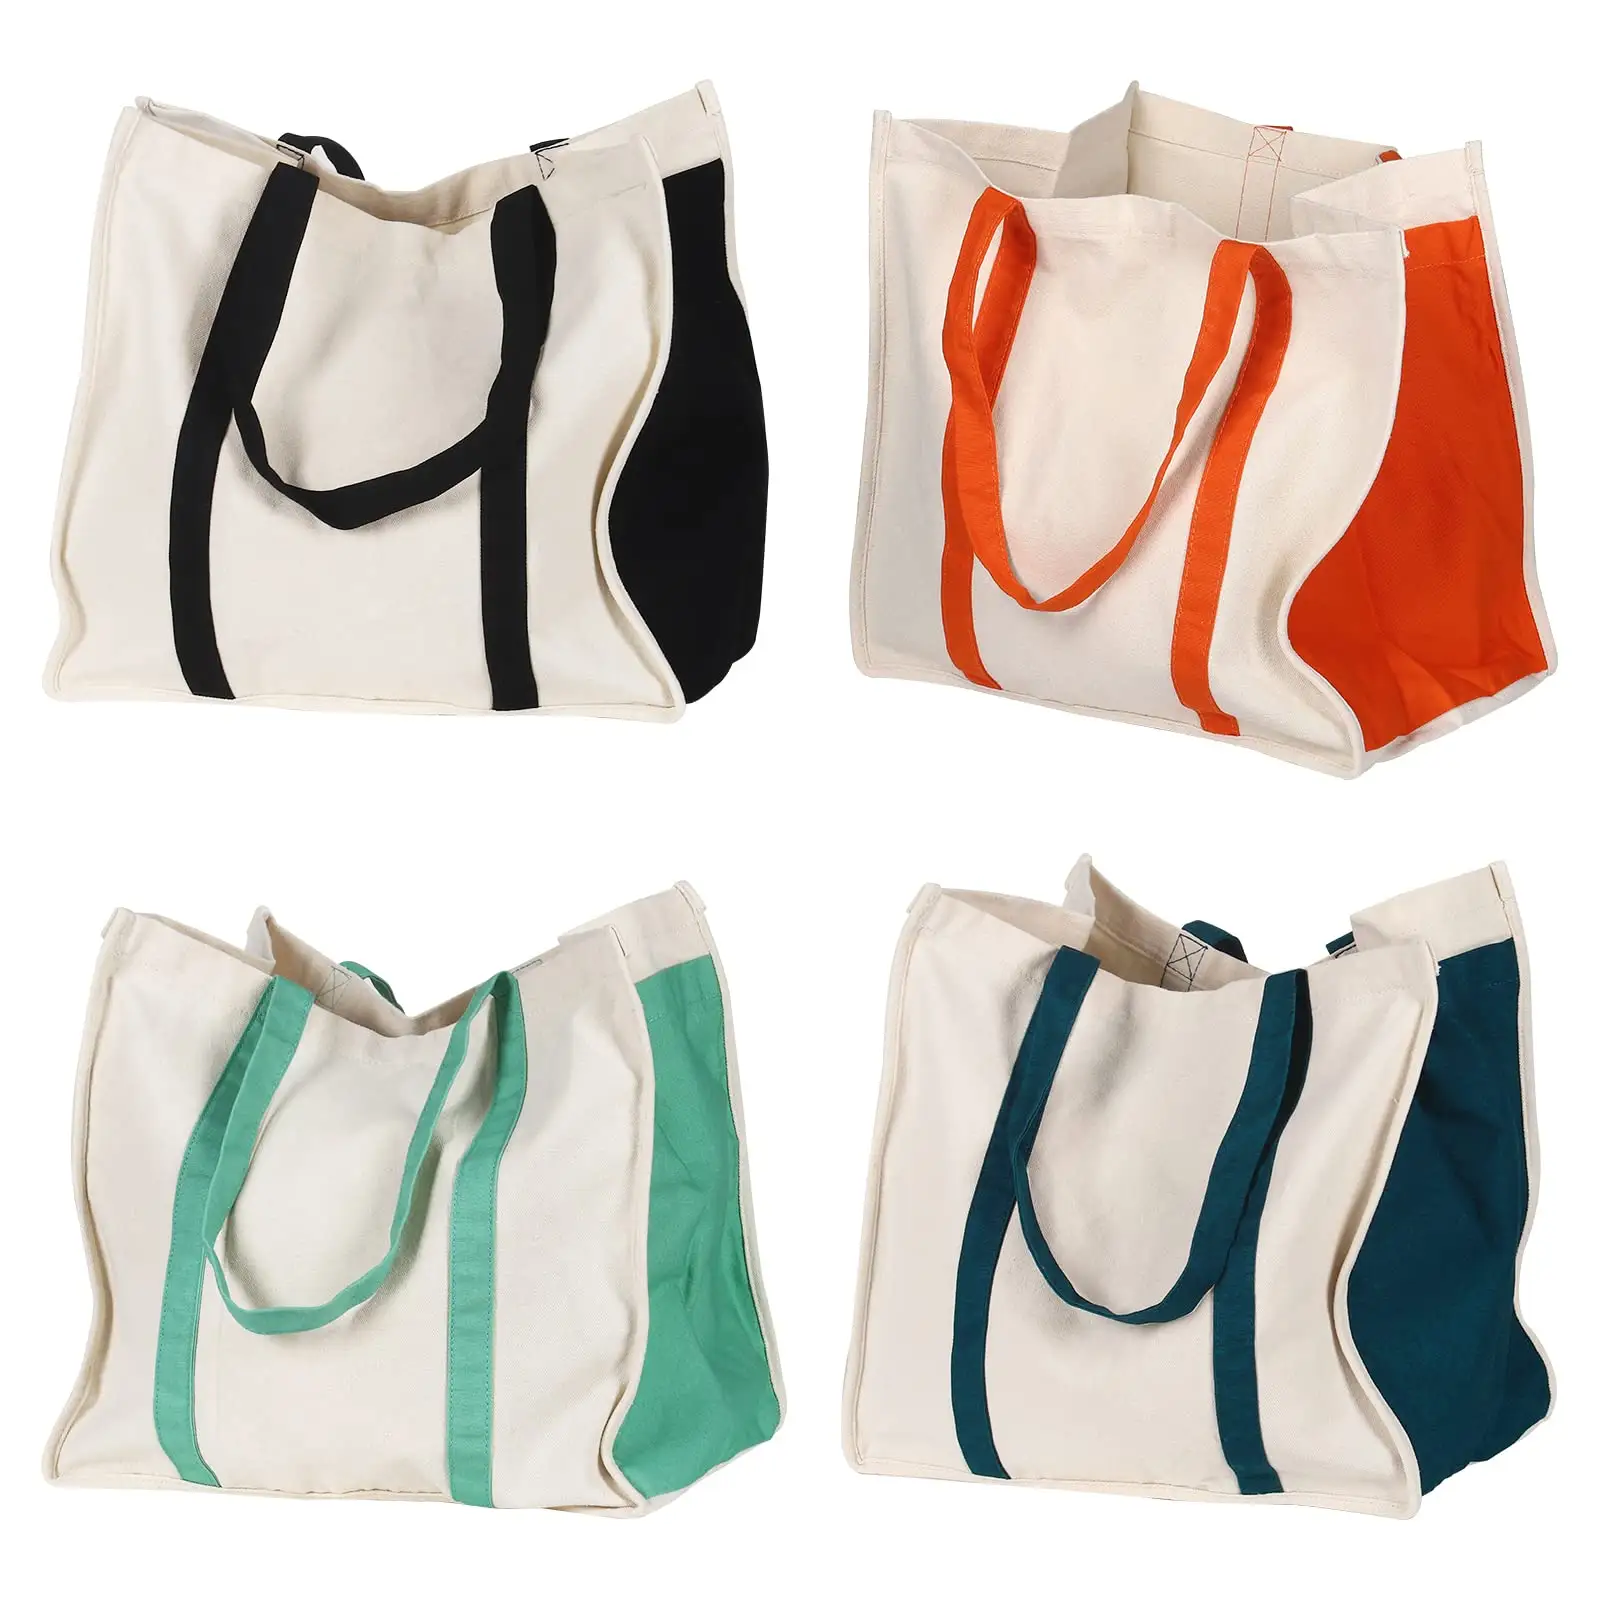 Yeni tasarımcı özel baskı renk pamuk sağlam uzun saplı renk yan cepler tuval Tote eko alışveriş pamuklu çantalar